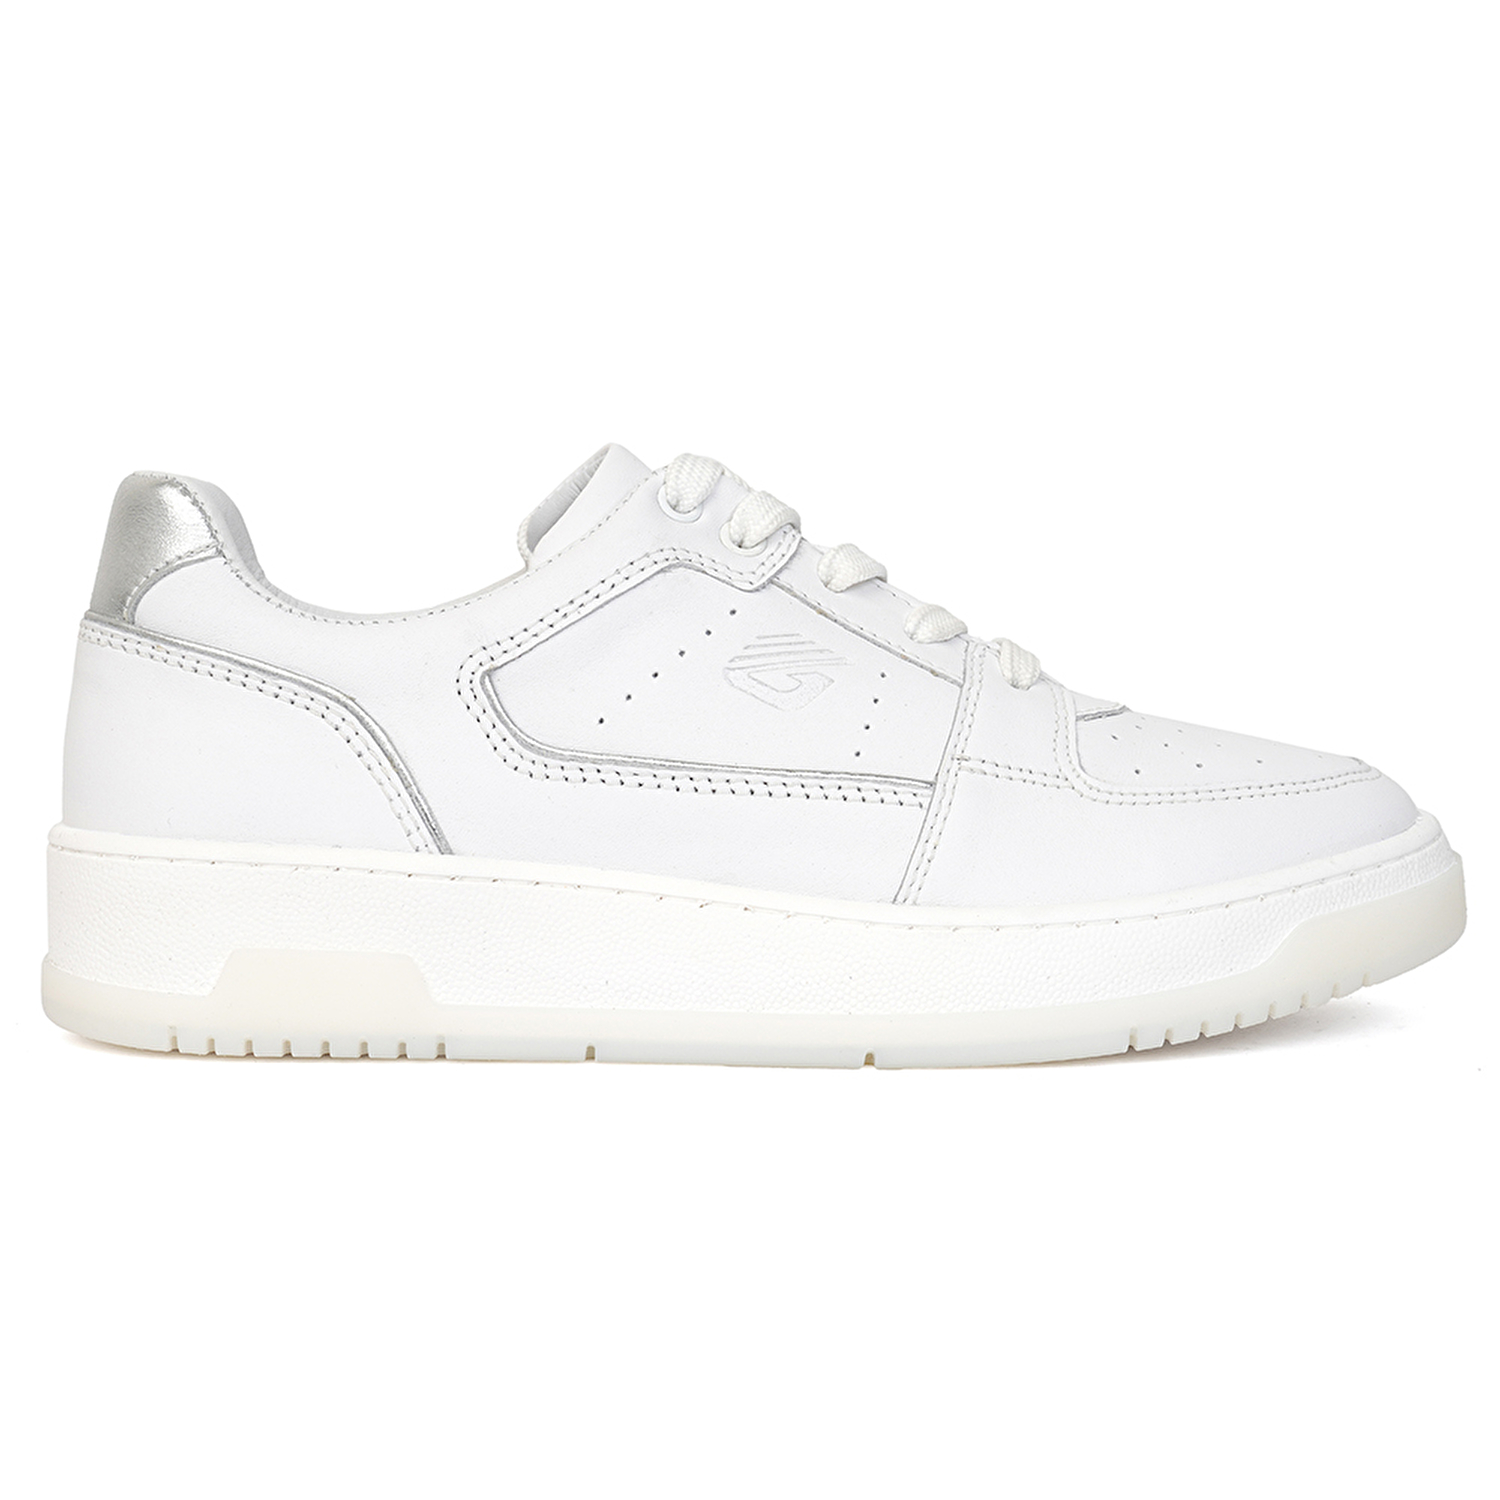 Kadın Beyaz Gümüş Hakiki Deri Sneaker Ayakkabı 3Y2SA32311-1